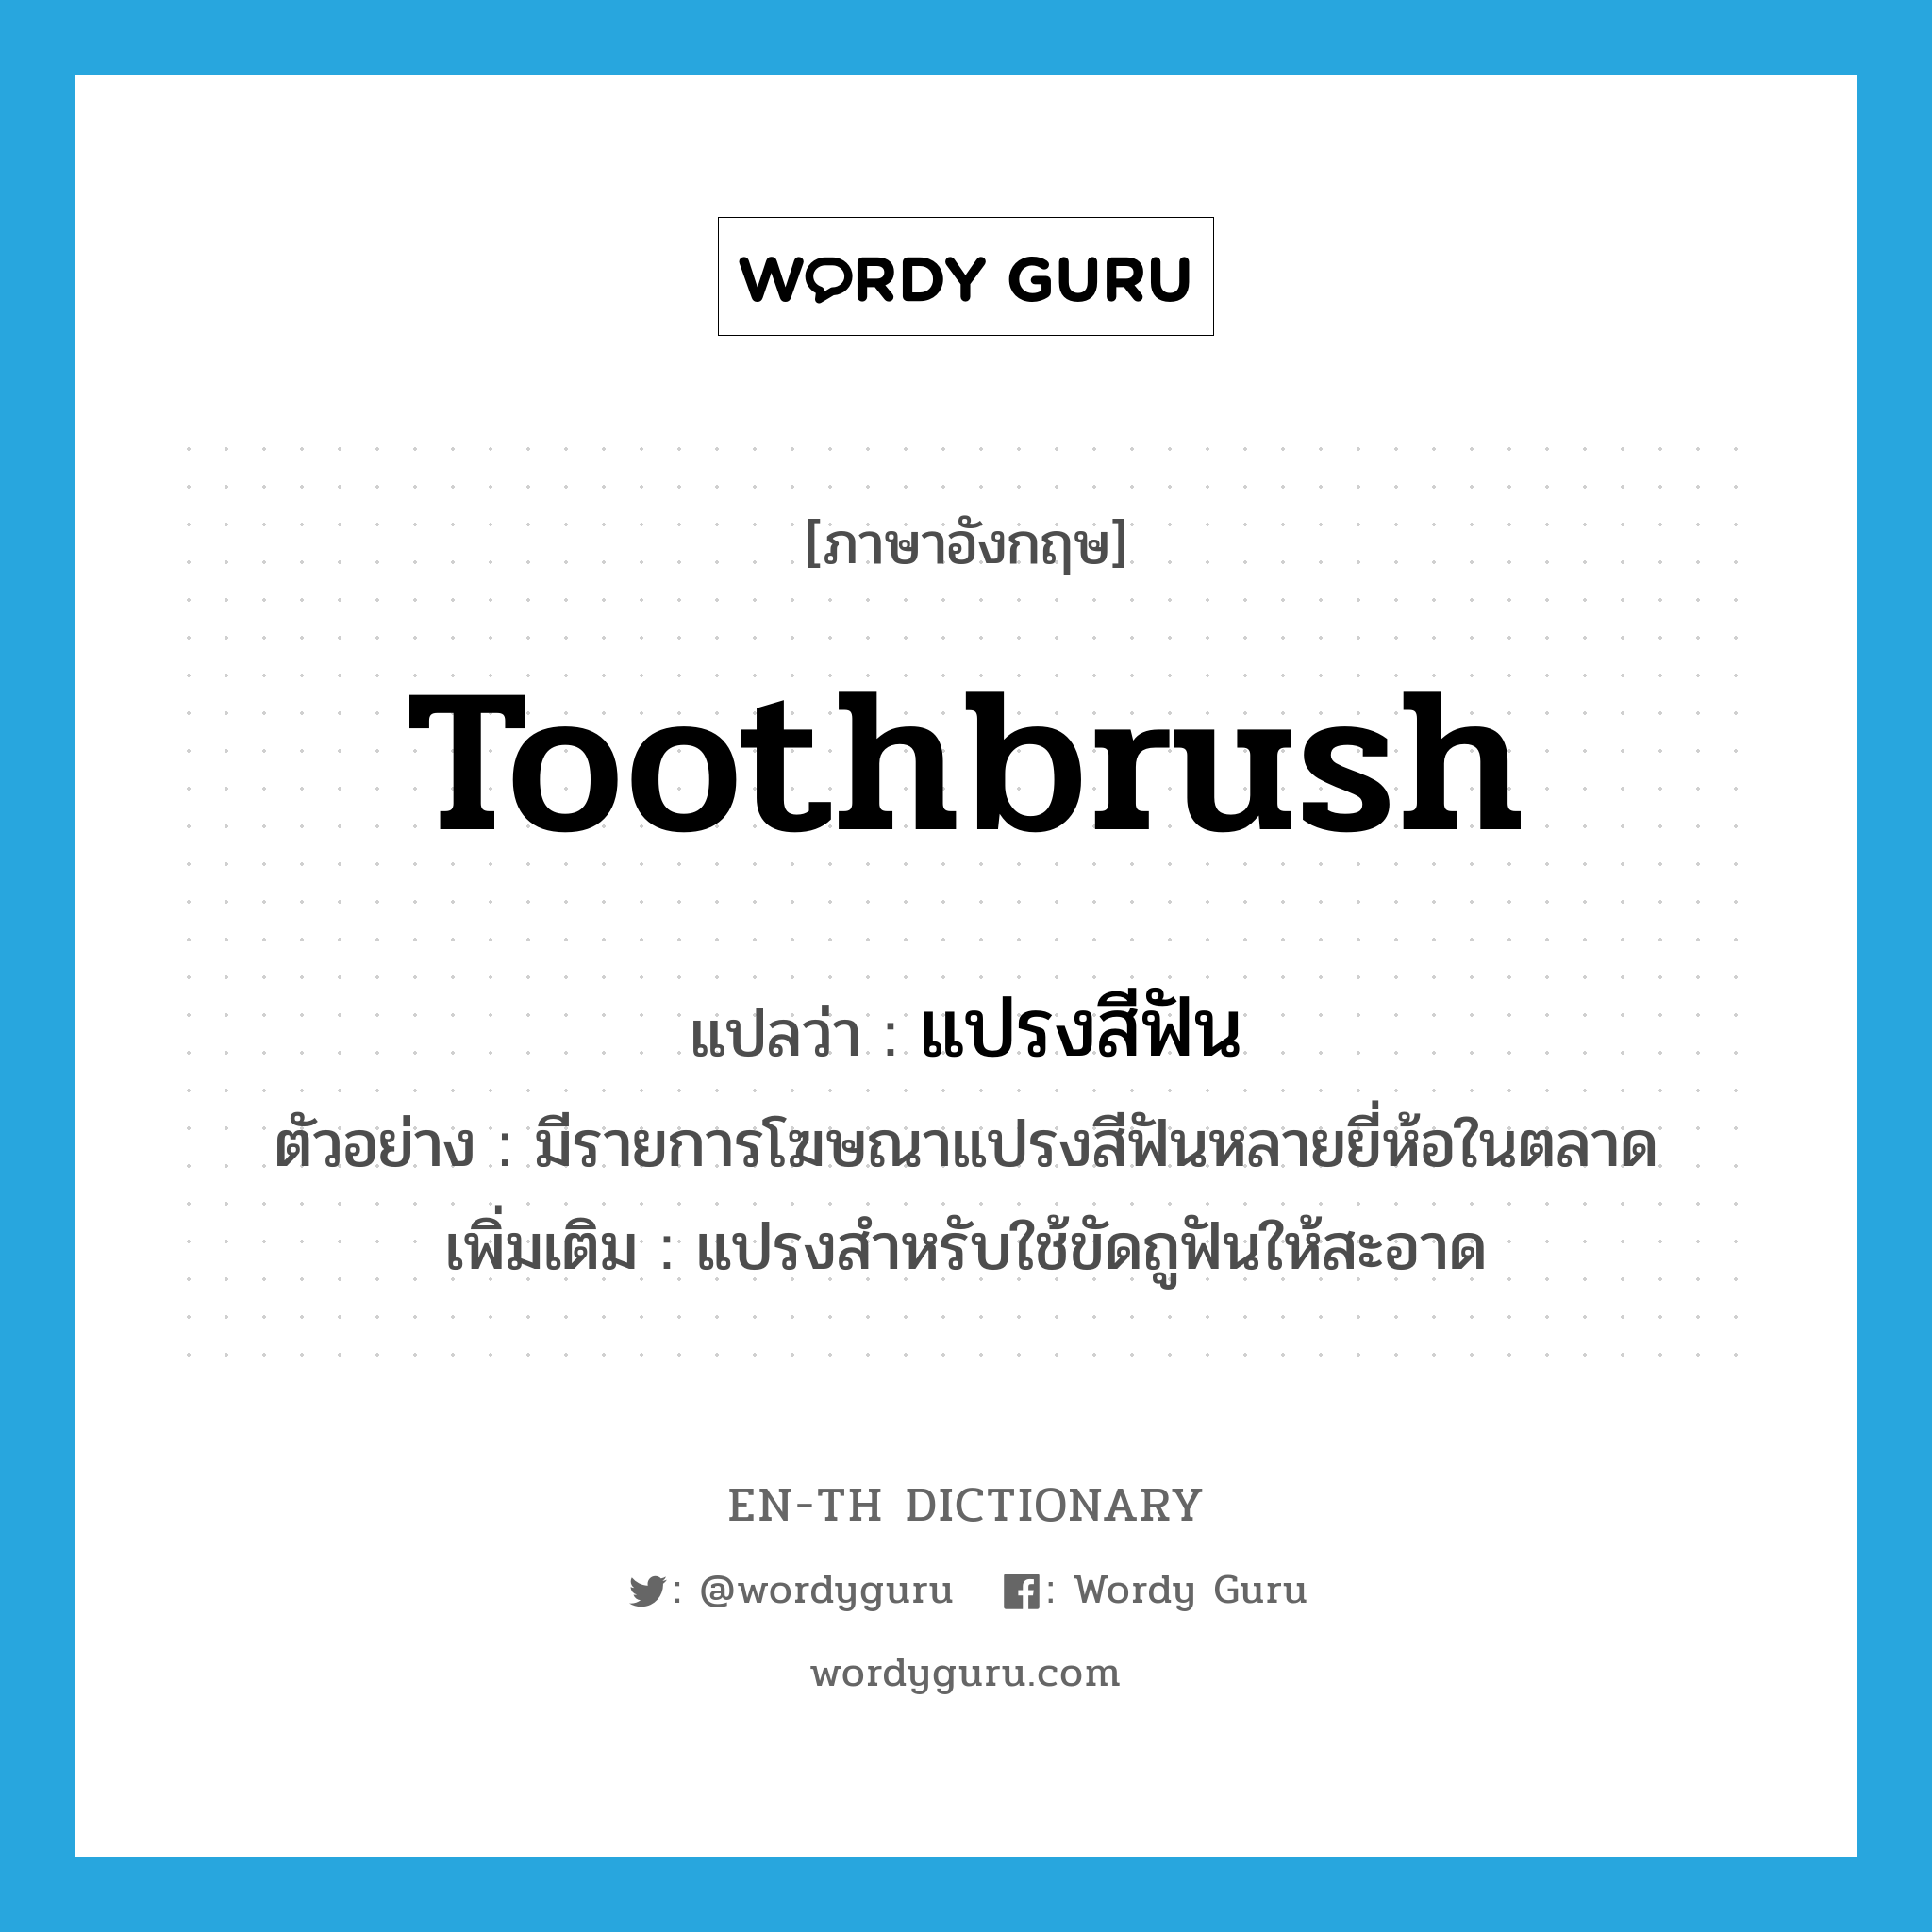 toothbrush แปลว่า?, คำศัพท์ภาษาอังกฤษ toothbrush แปลว่า แปรงสีฟัน ประเภท N ตัวอย่าง มีรายการโฆษณาแปรงสีฟันหลายยี่ห้อในตลาด เพิ่มเติม แปรงสำหรับใช้ขัดถูฟันให้สะอาด หมวด N